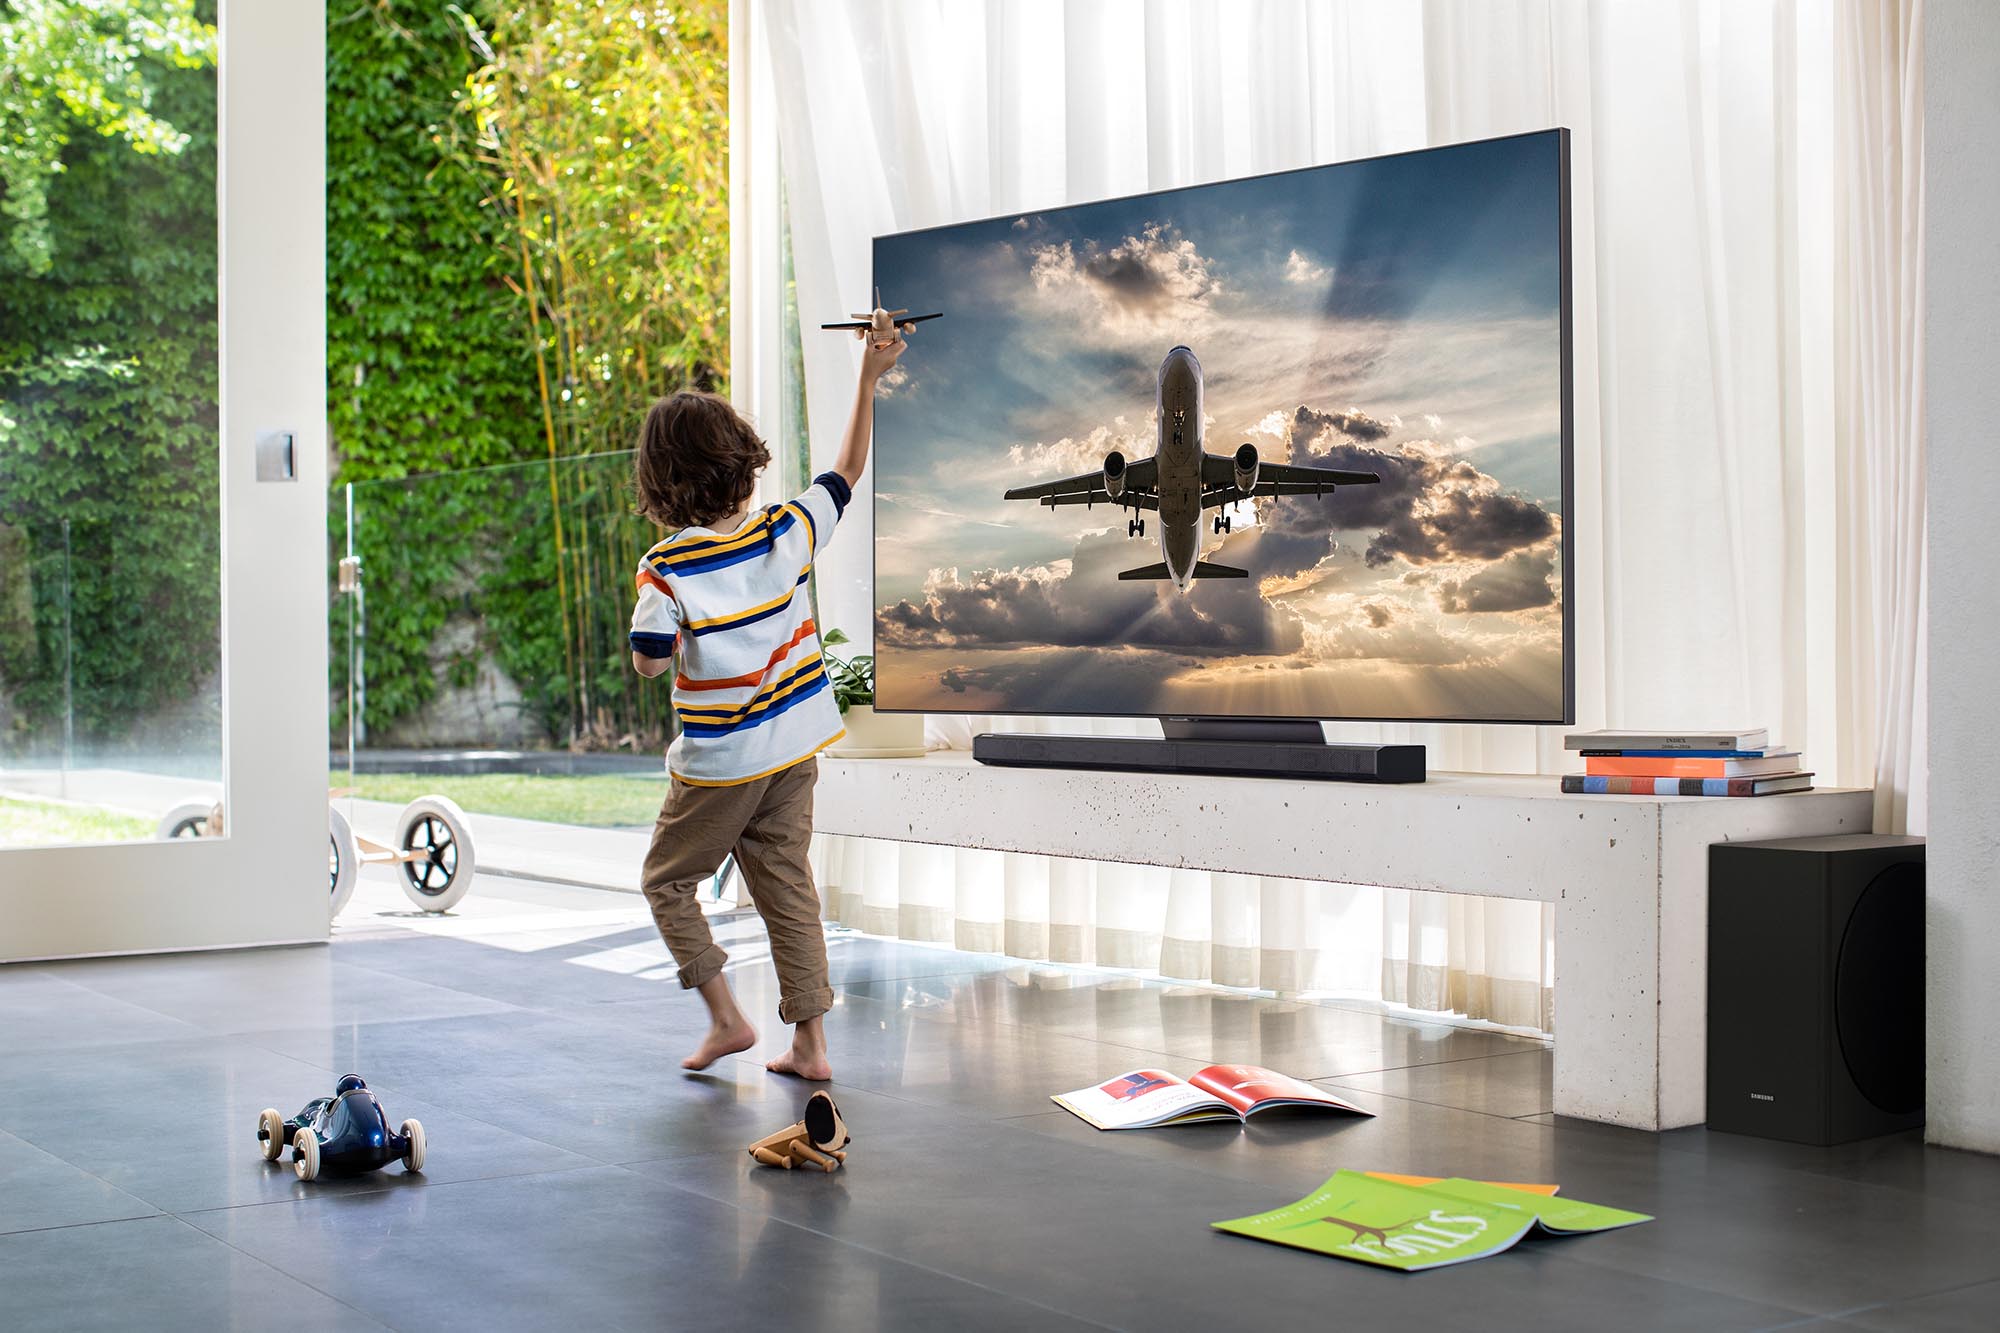 Samsung giới thiệu dòng TV QLED 8K 2020 với hàng loạt công nghệ đỉnh cao